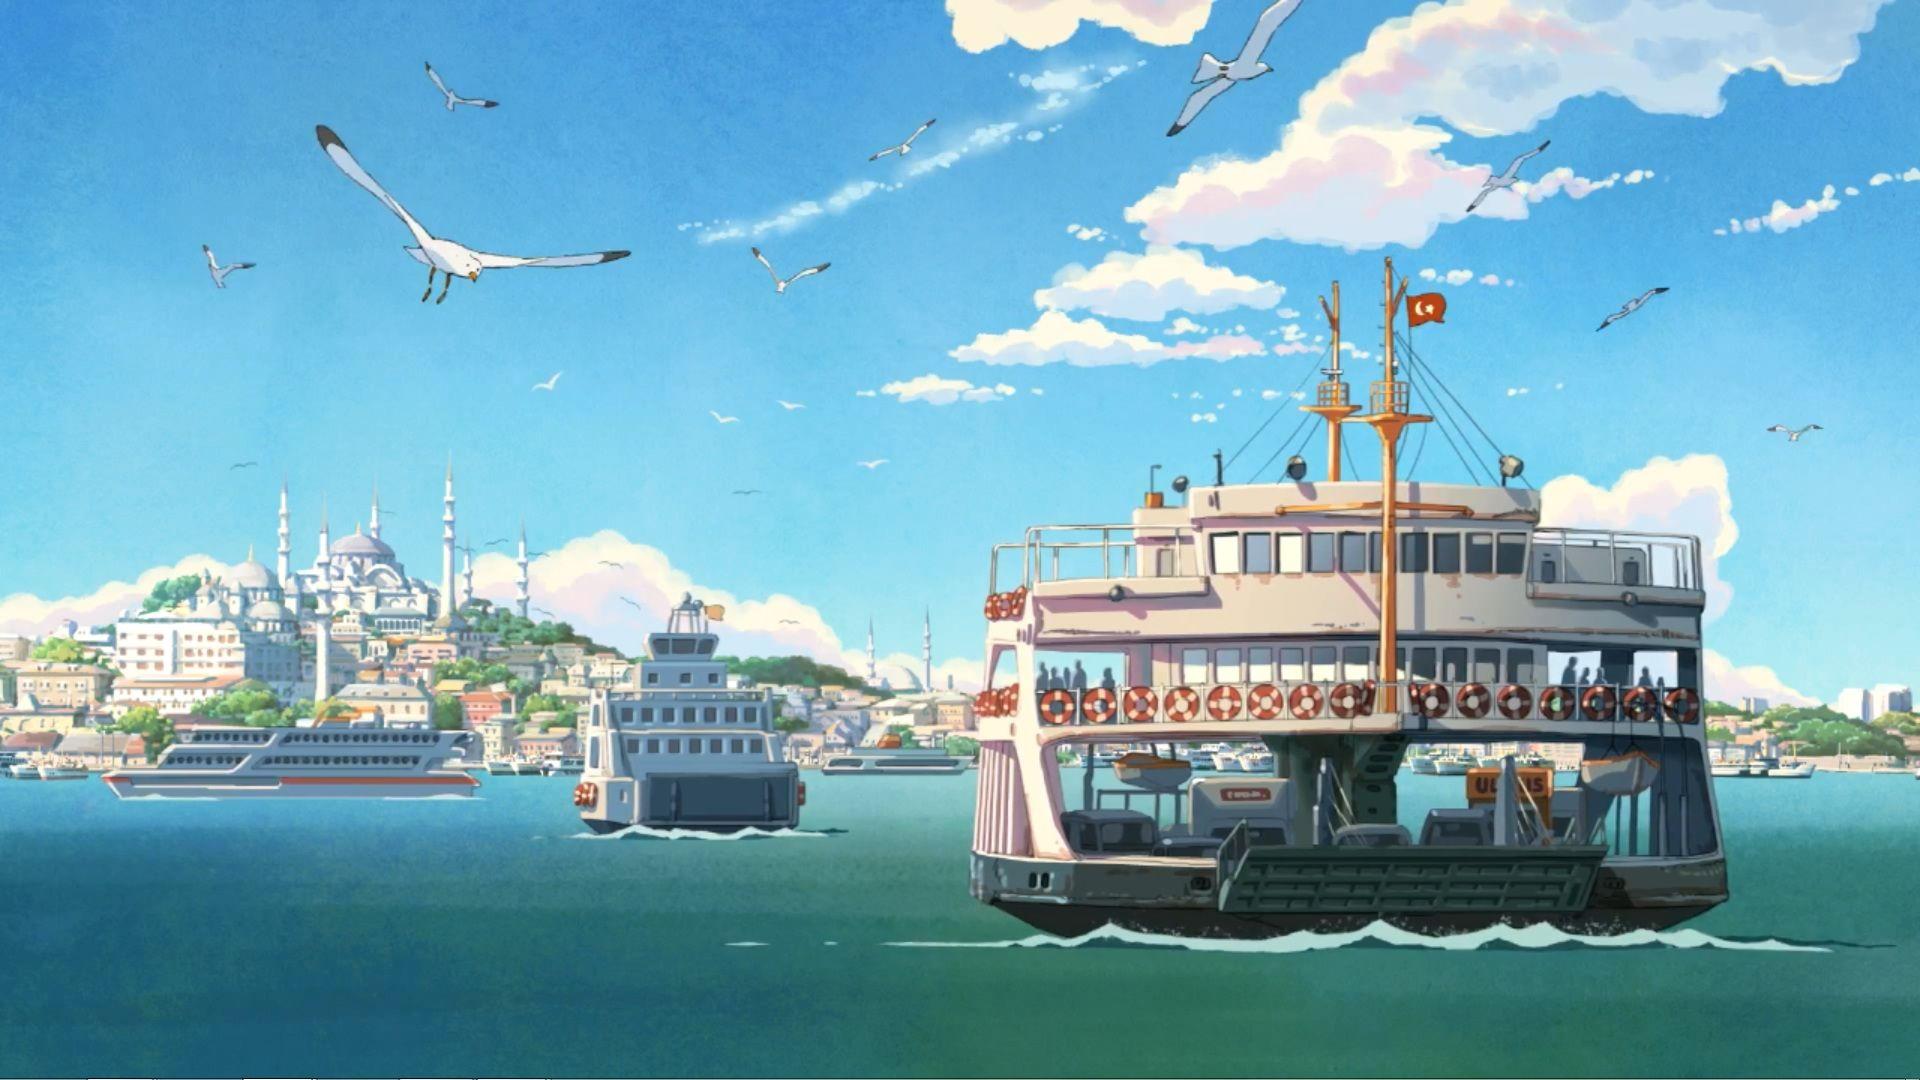 Anime Landscape Wallpaper, Anime Wallpaper